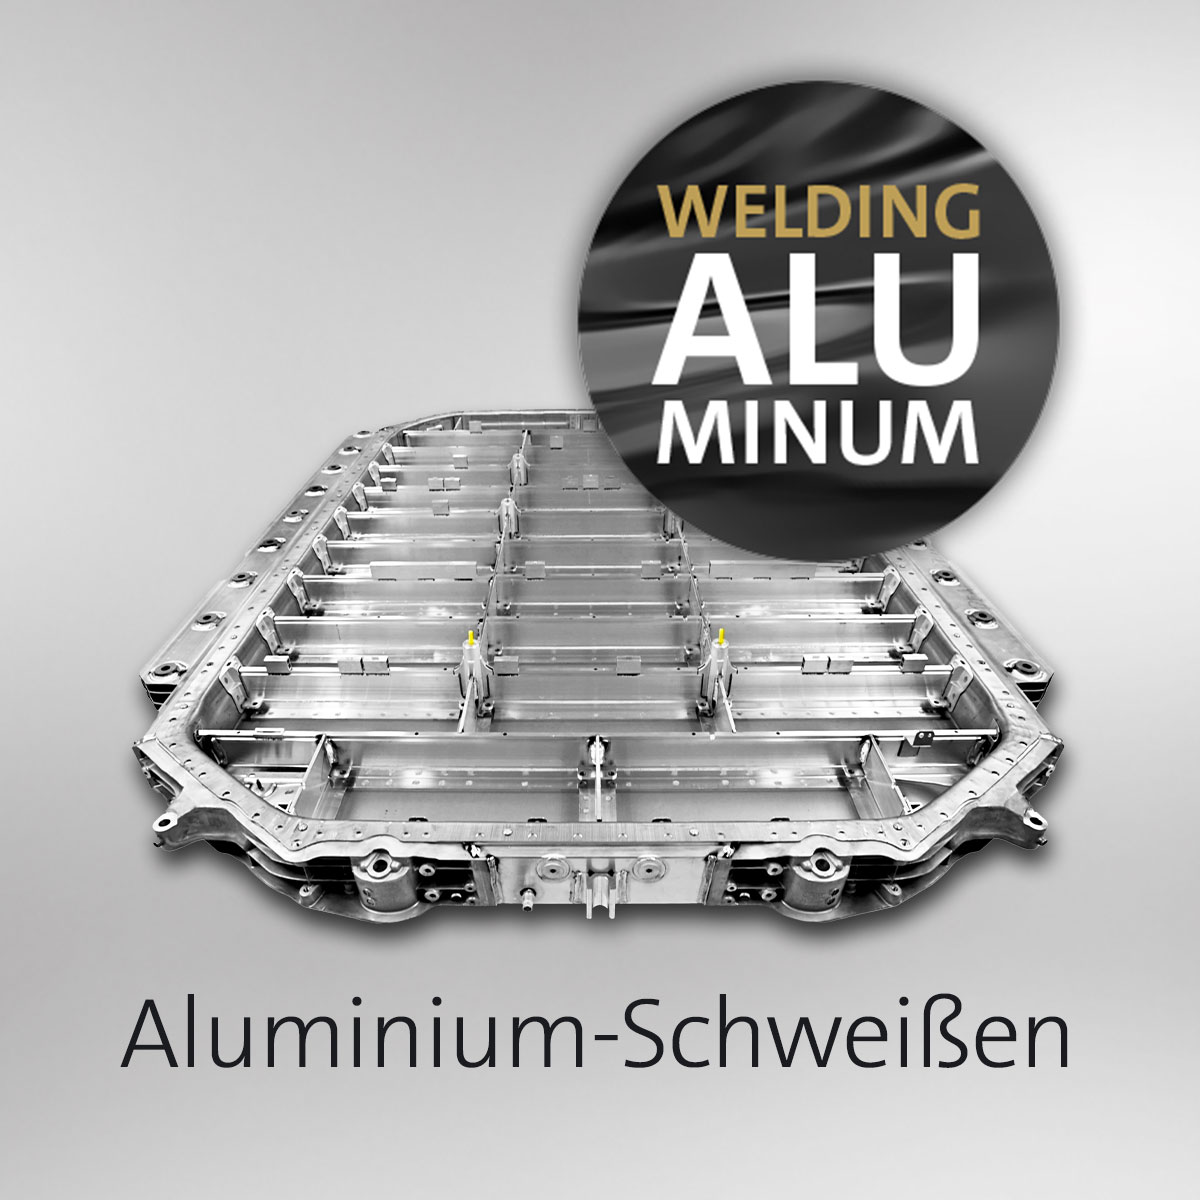 Aluminium-Schweißen mit SKS: Video ansehen